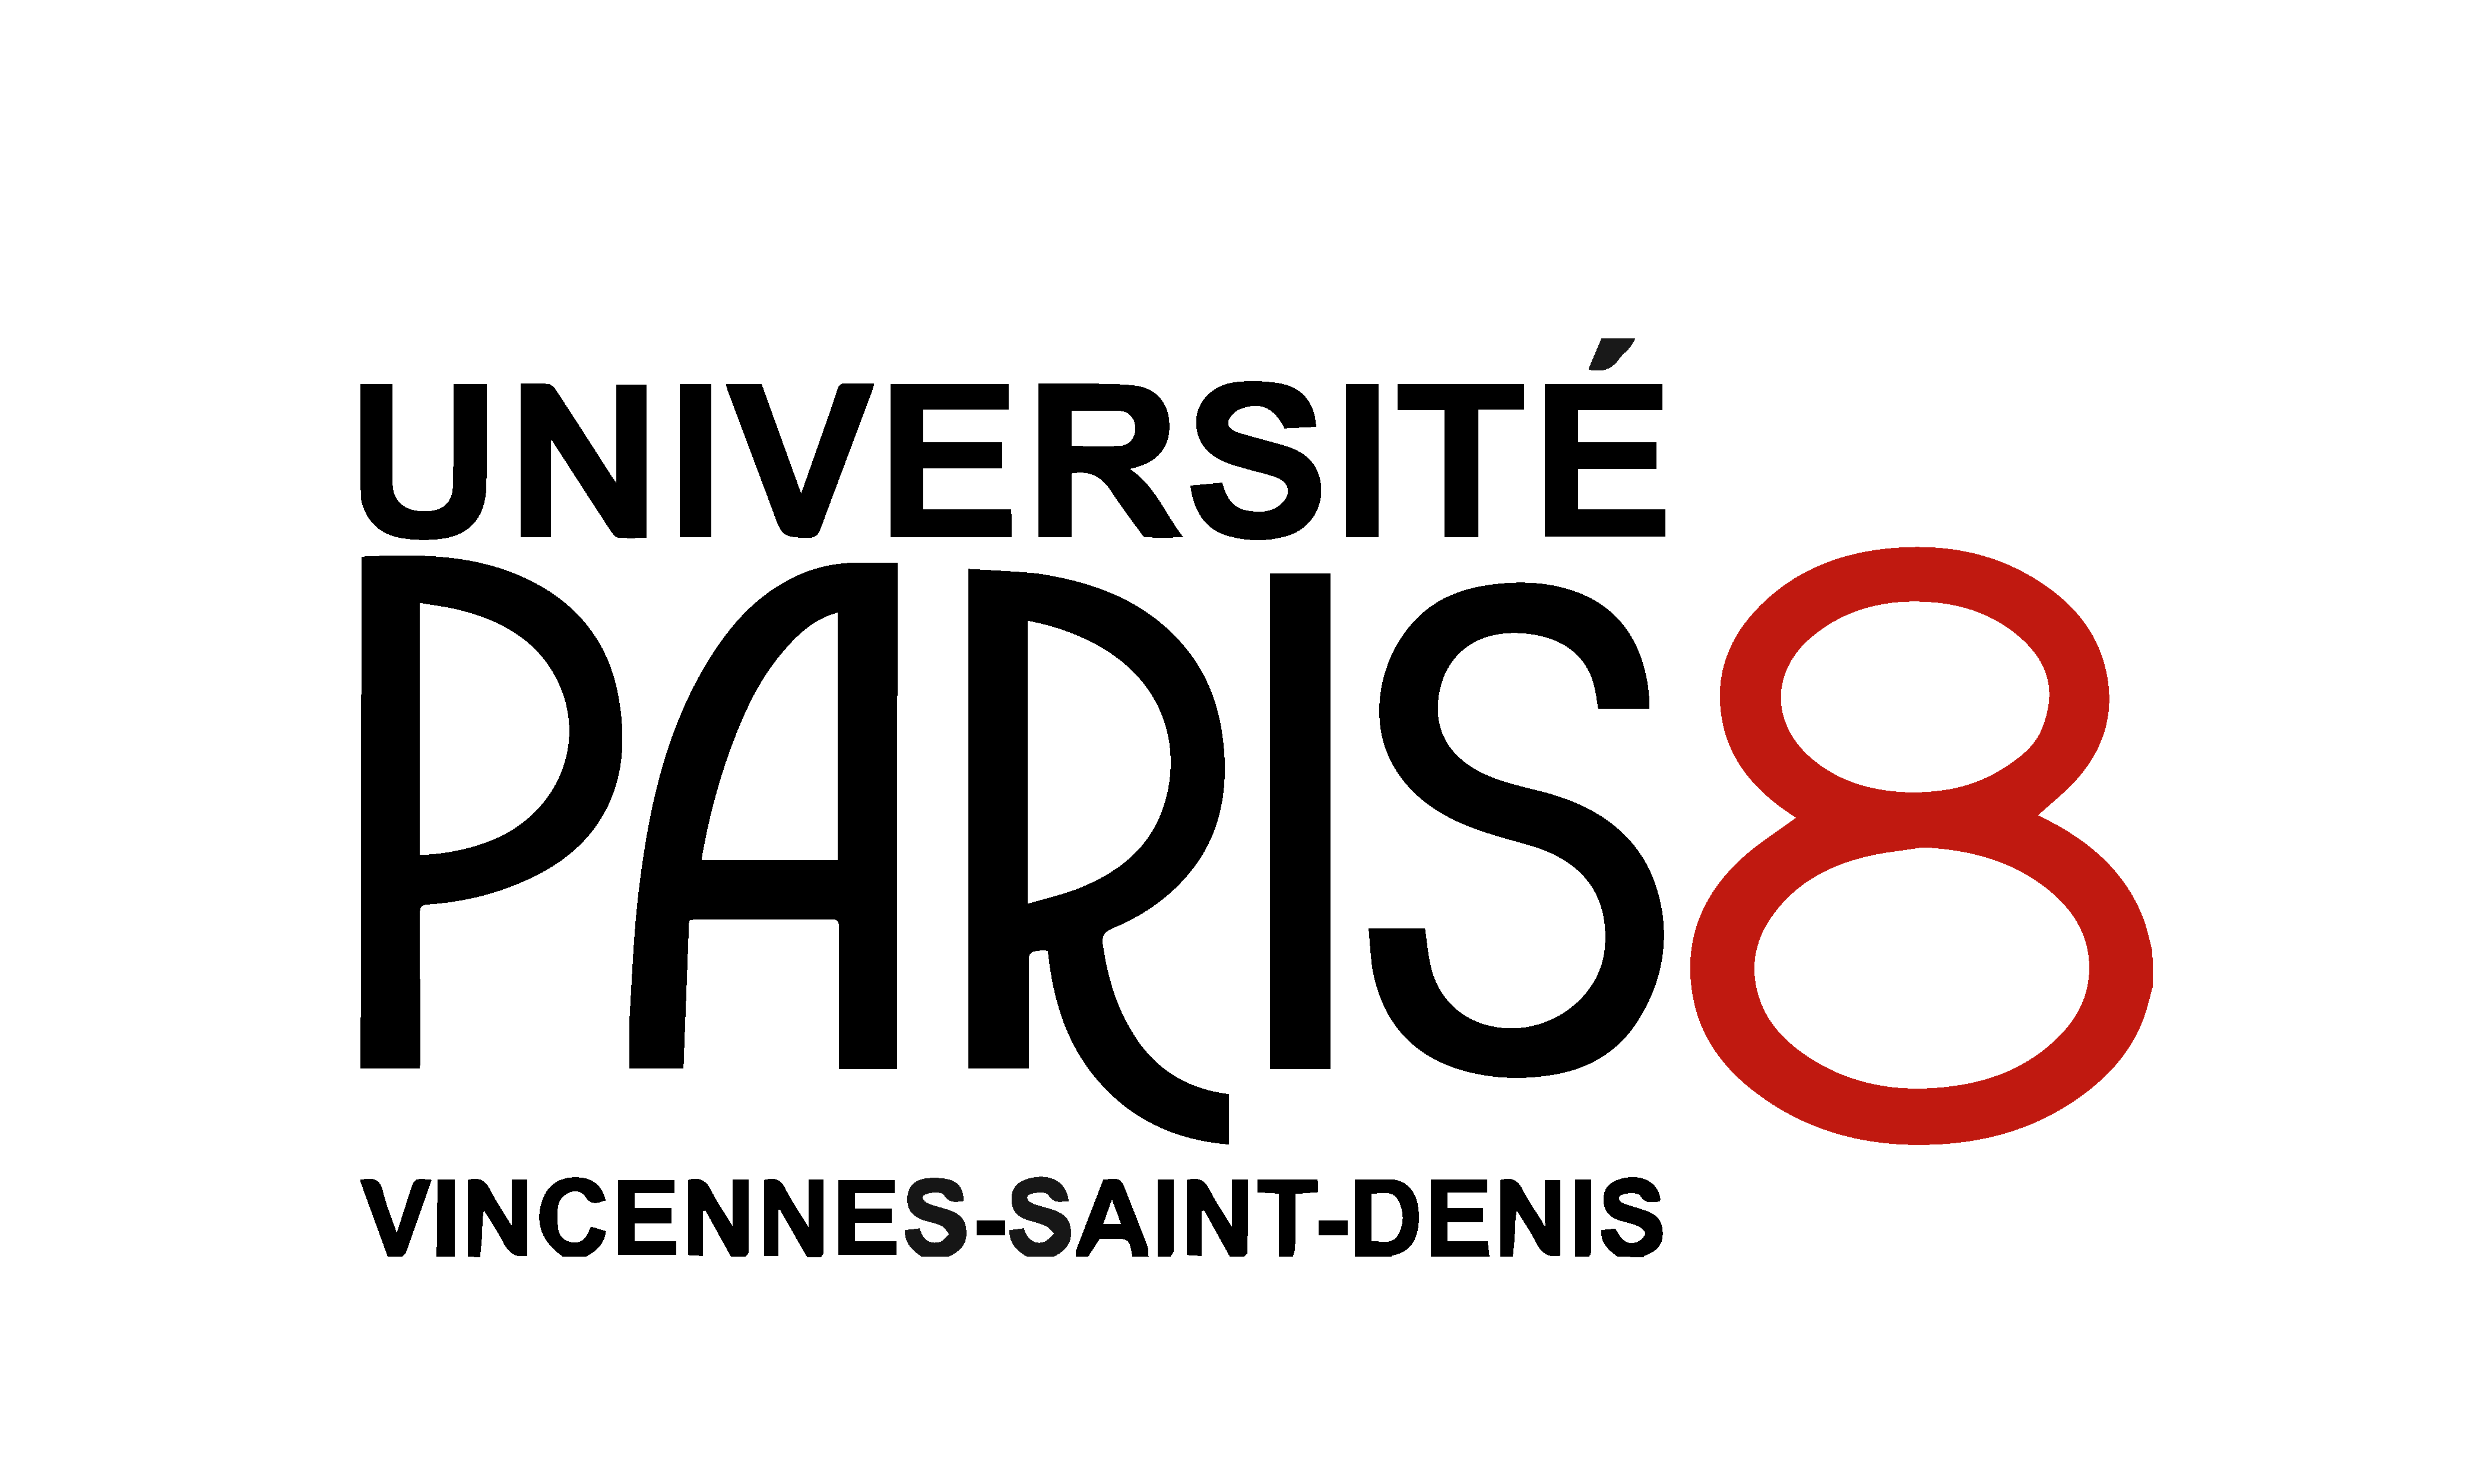 Université Paris 8 Vincennes-Saint-Denis (P8)